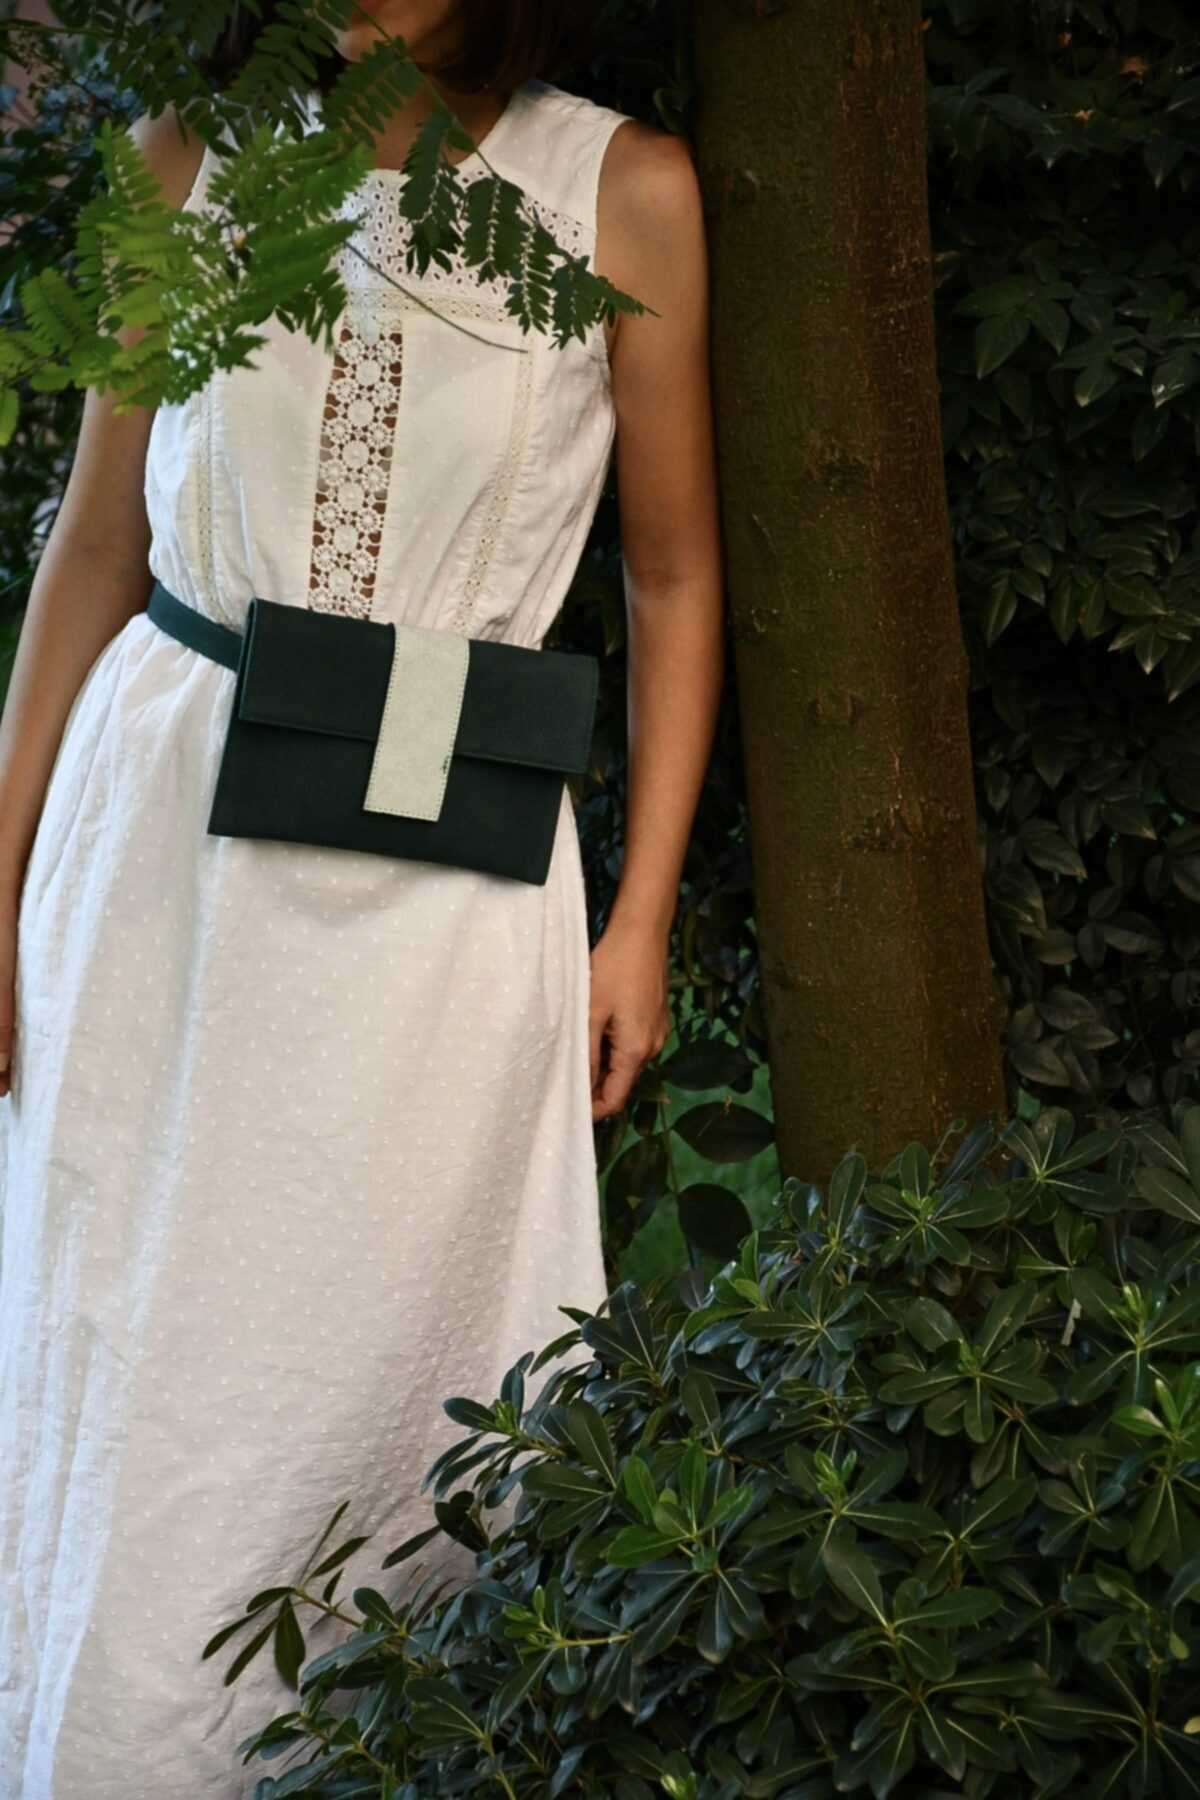 مدل کیف کمری چرم طبیعی زنانه برند Bonvien رنگ سبز کد ty55374349